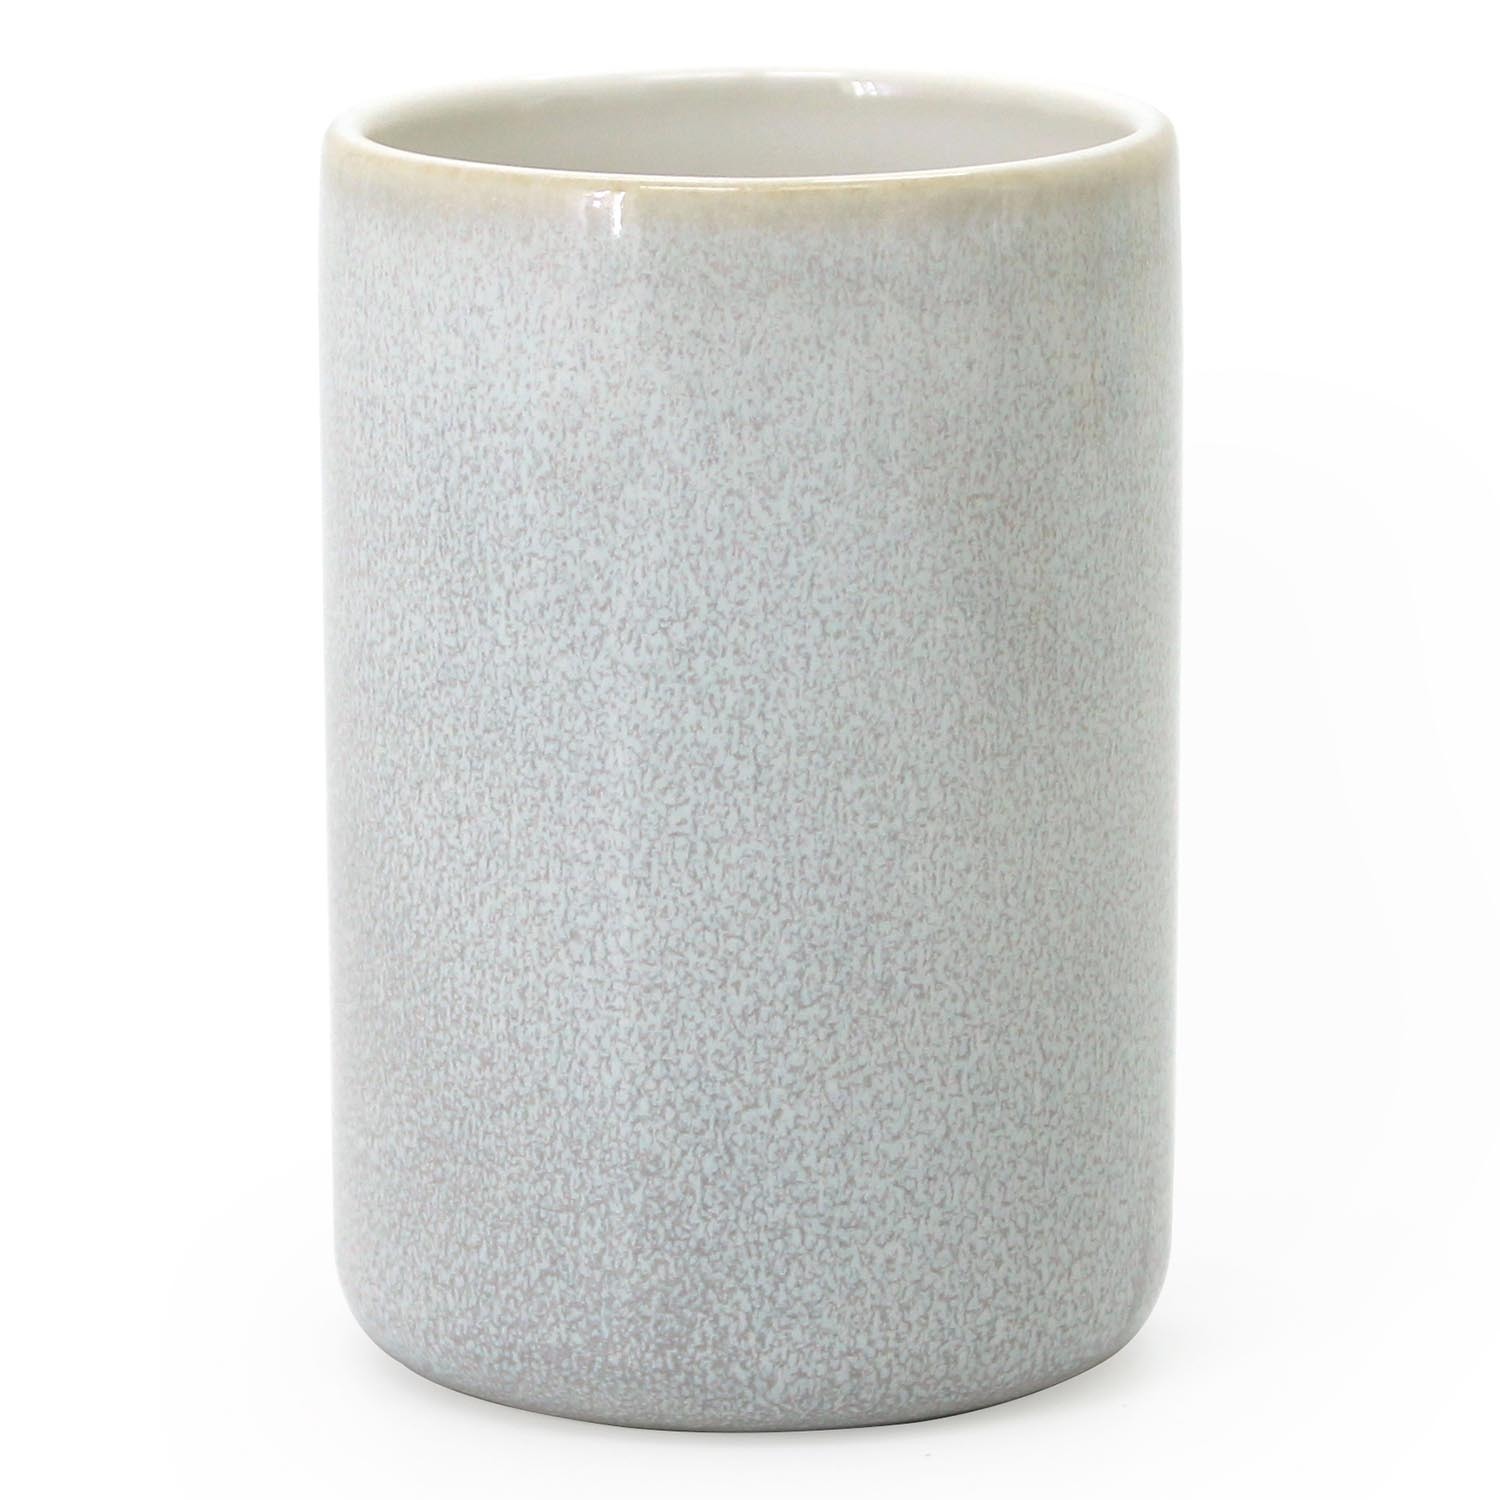 Stone Glaze Tumbler - White Image